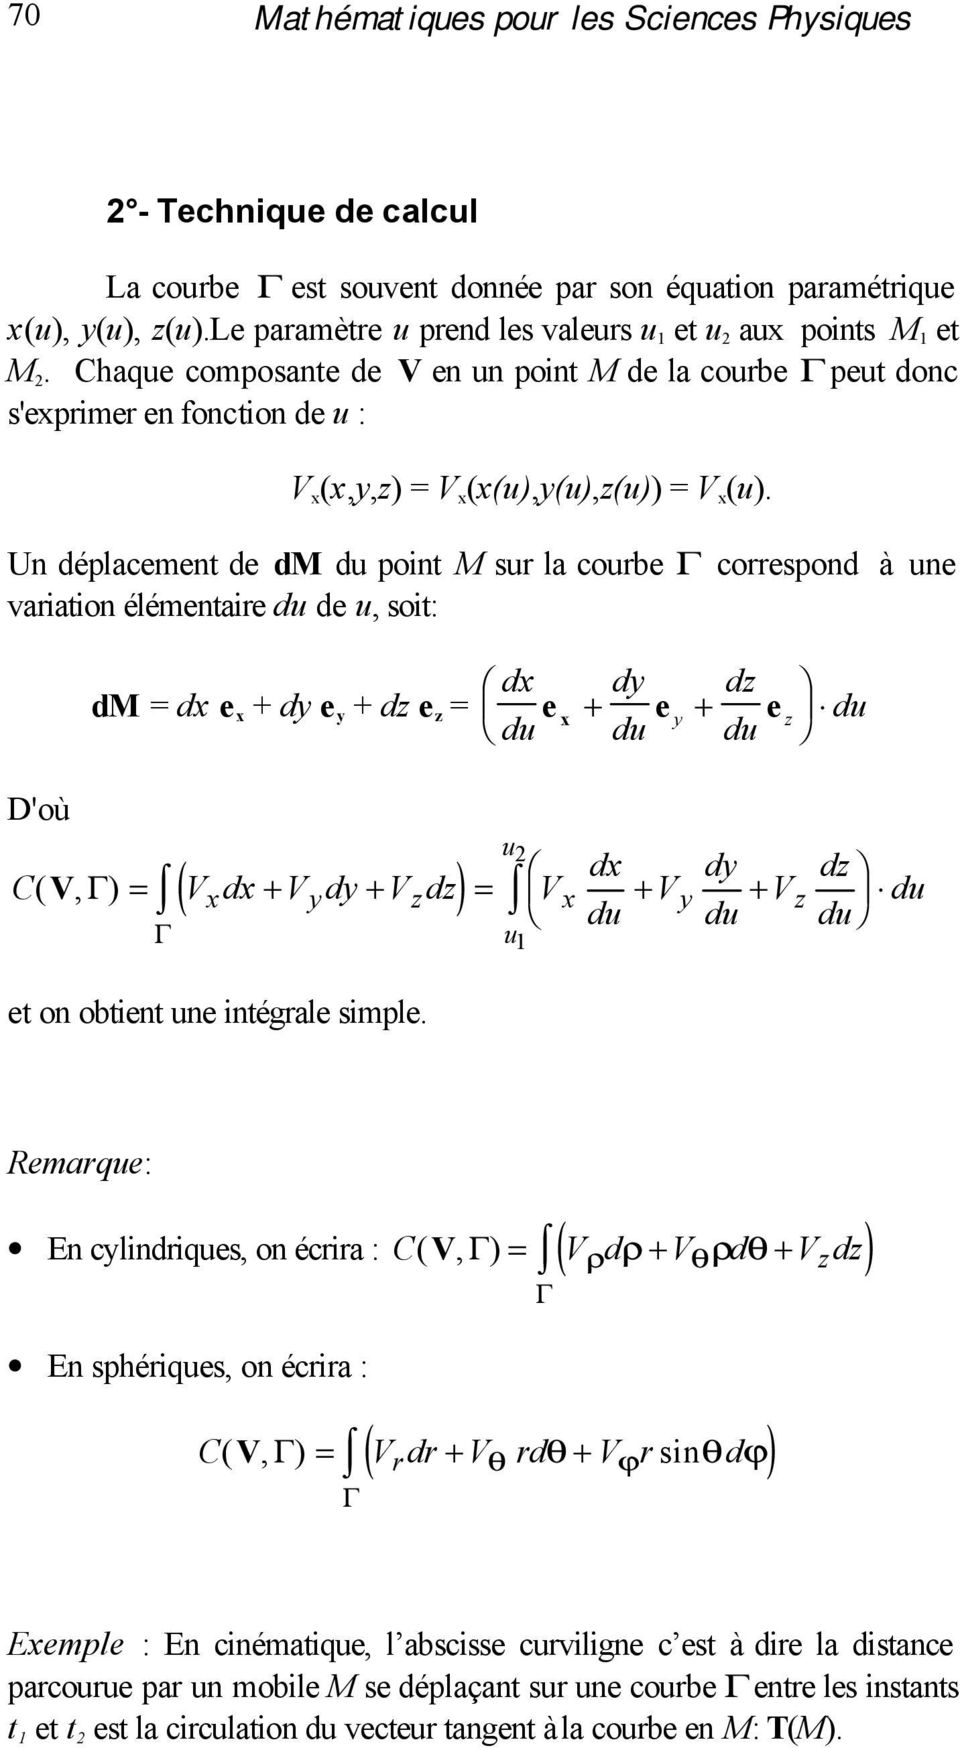 Un déplacement de d du point sur la courbe correspond à une variation élémentaire du de u, soit: d = dx e x + dy e y + dz e z = dx dy dz e du + x e y e du + du z du D'où ( ) C(, ) = dx + dy + dz = dx